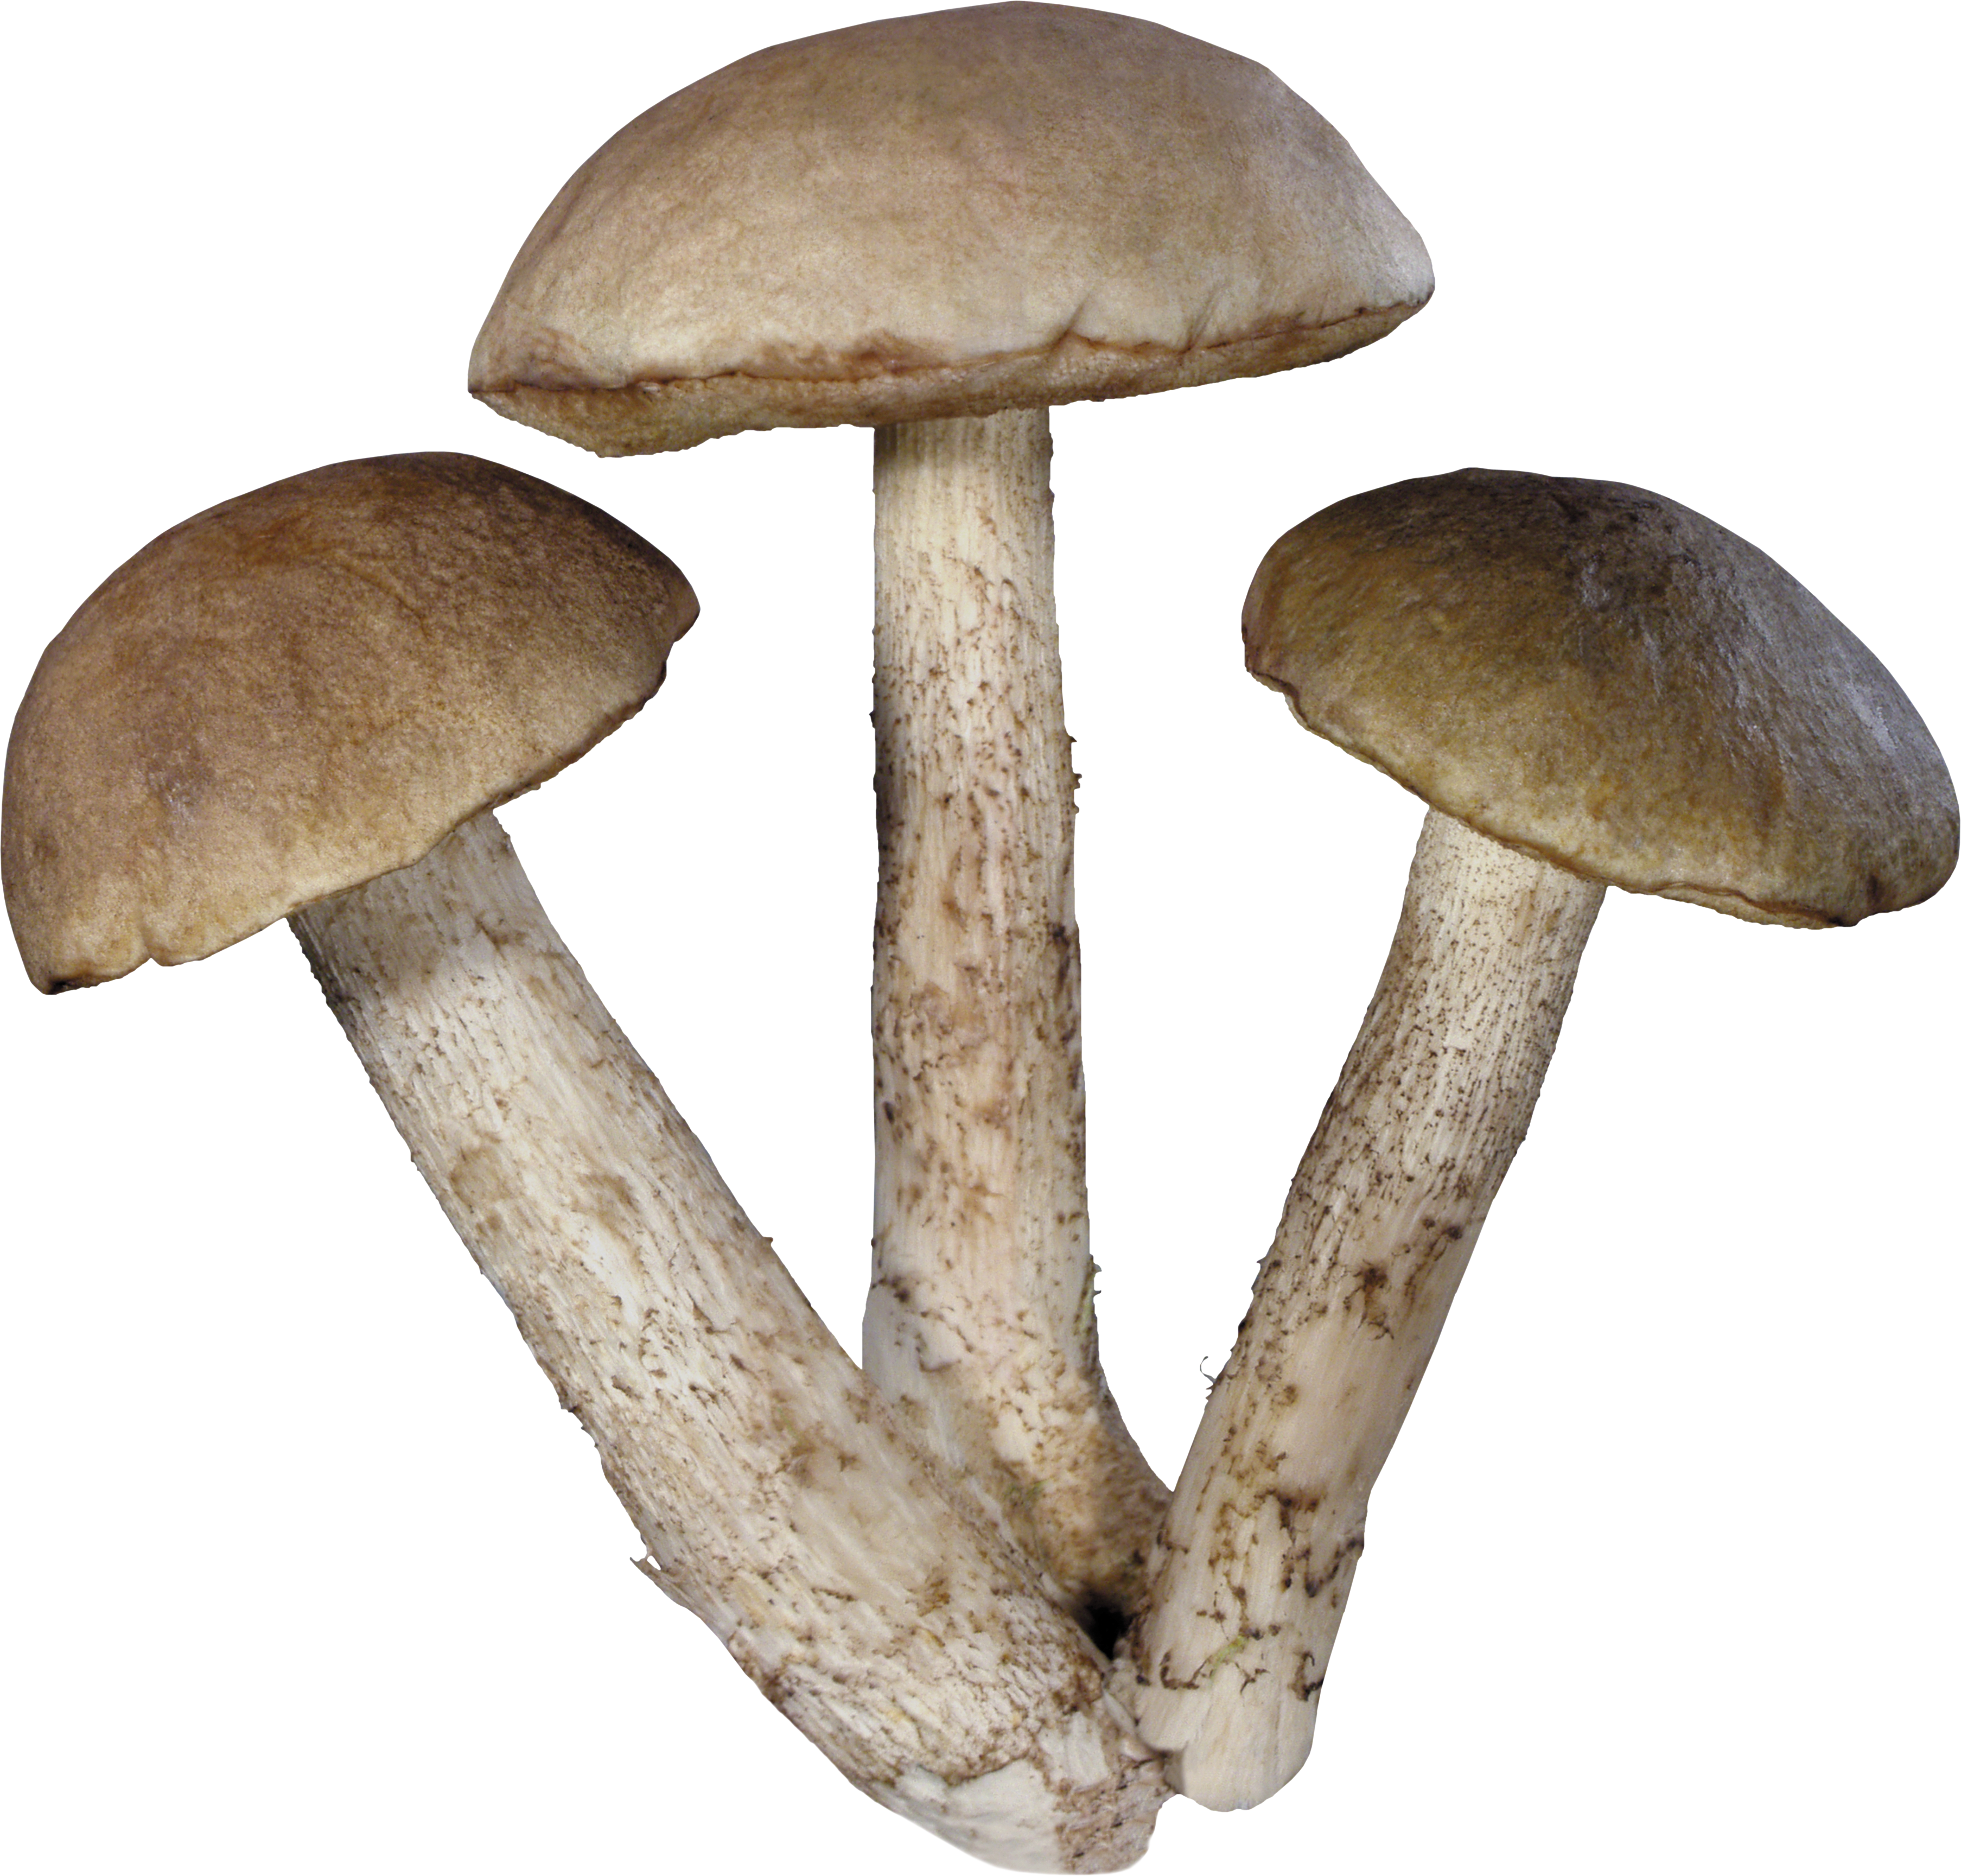 Three tree Mushrooms